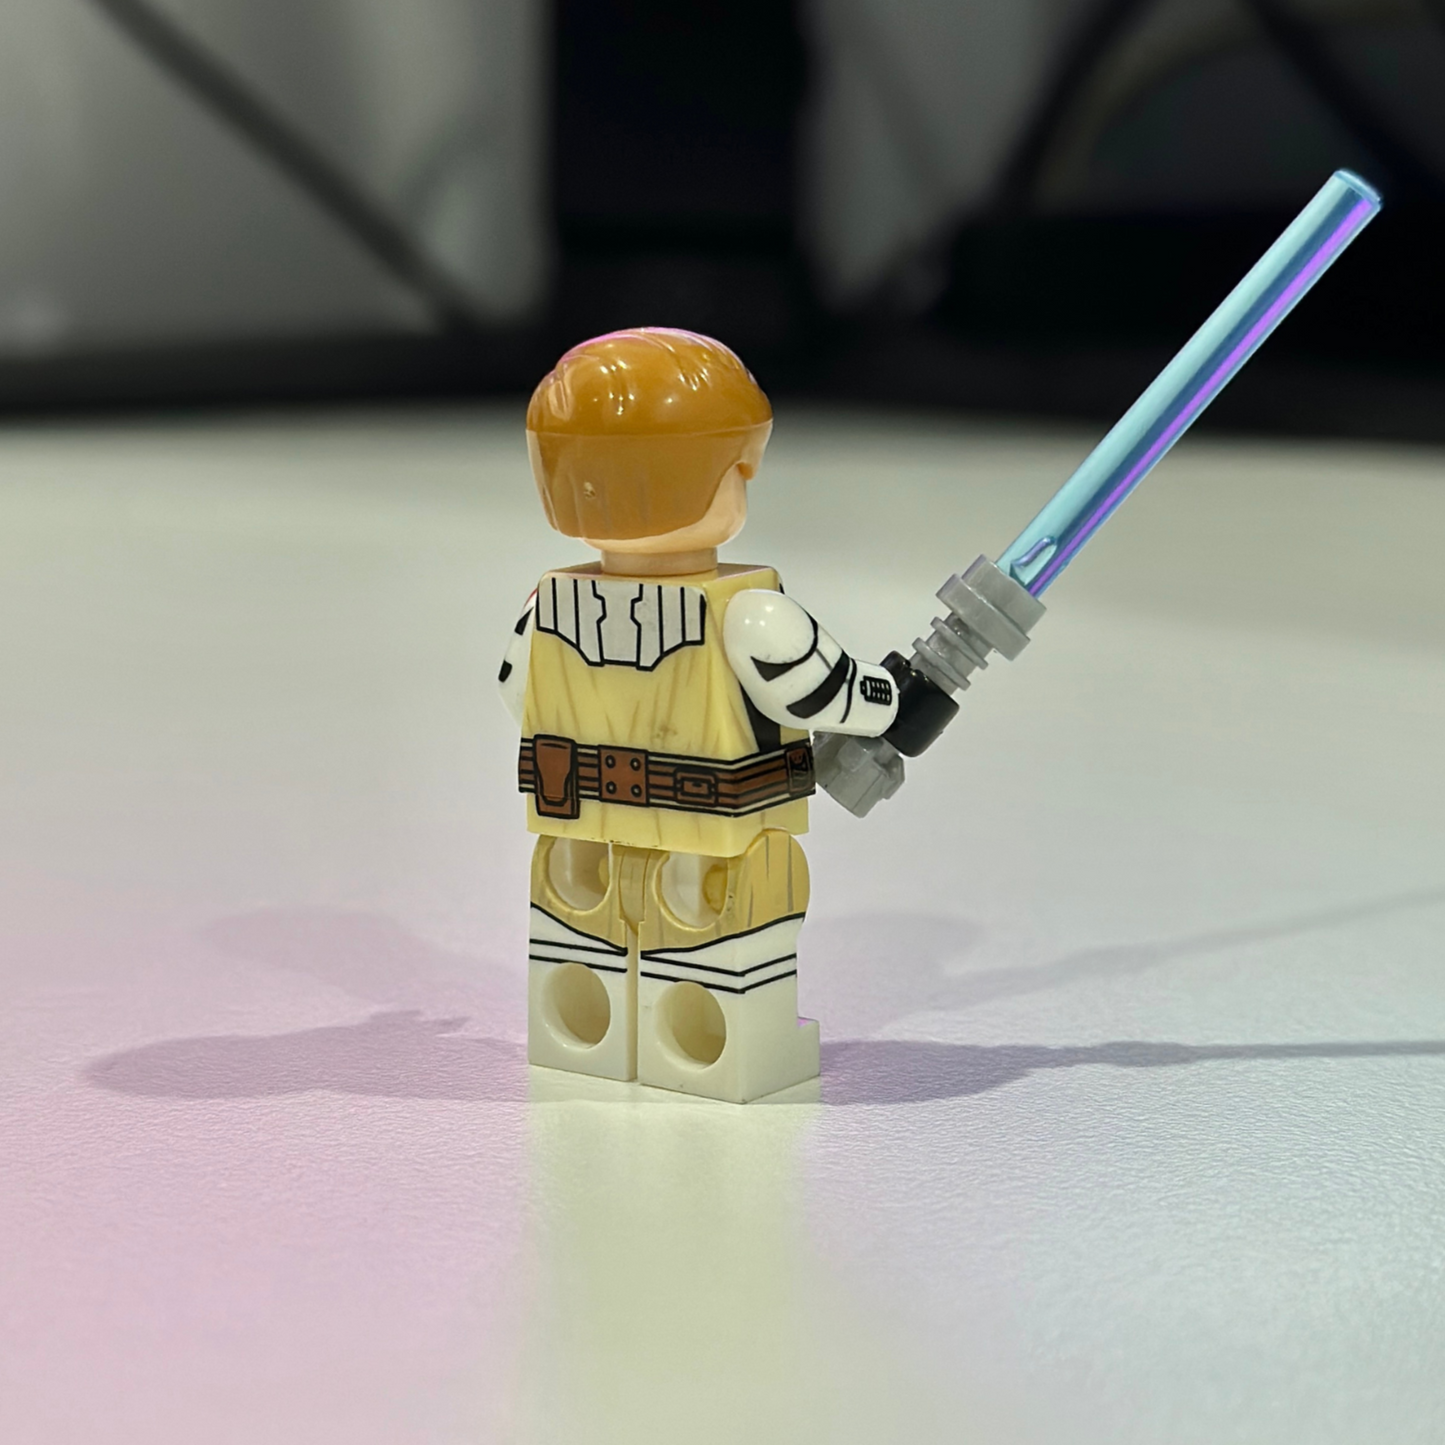 Star Wars Obi-Wan Kenobi Jedi Master Minifigure - 212th Battalion Commander